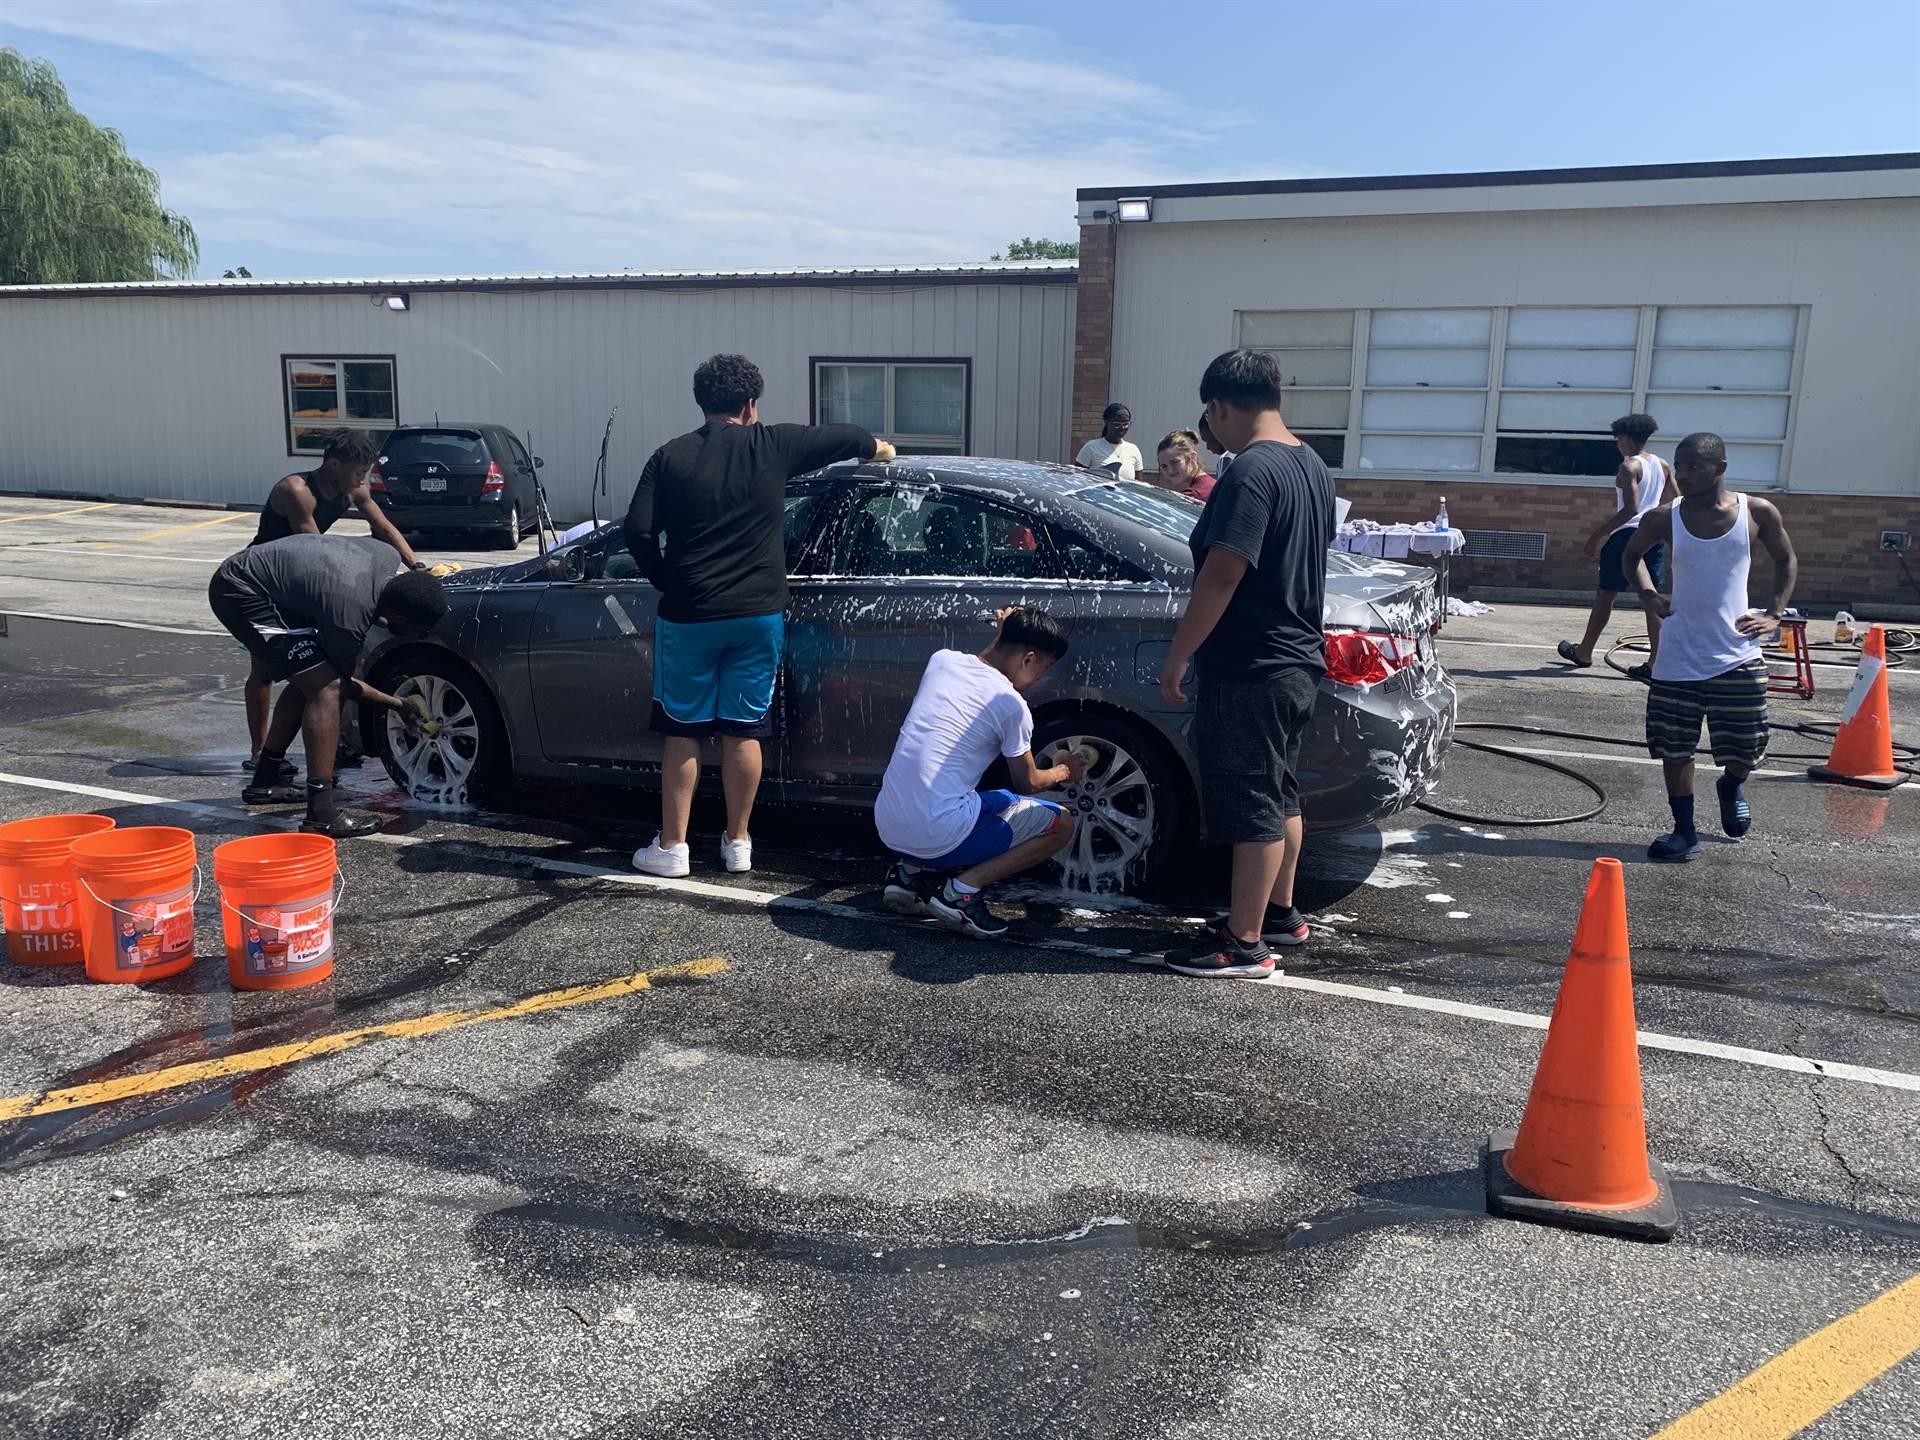 Students washing a car